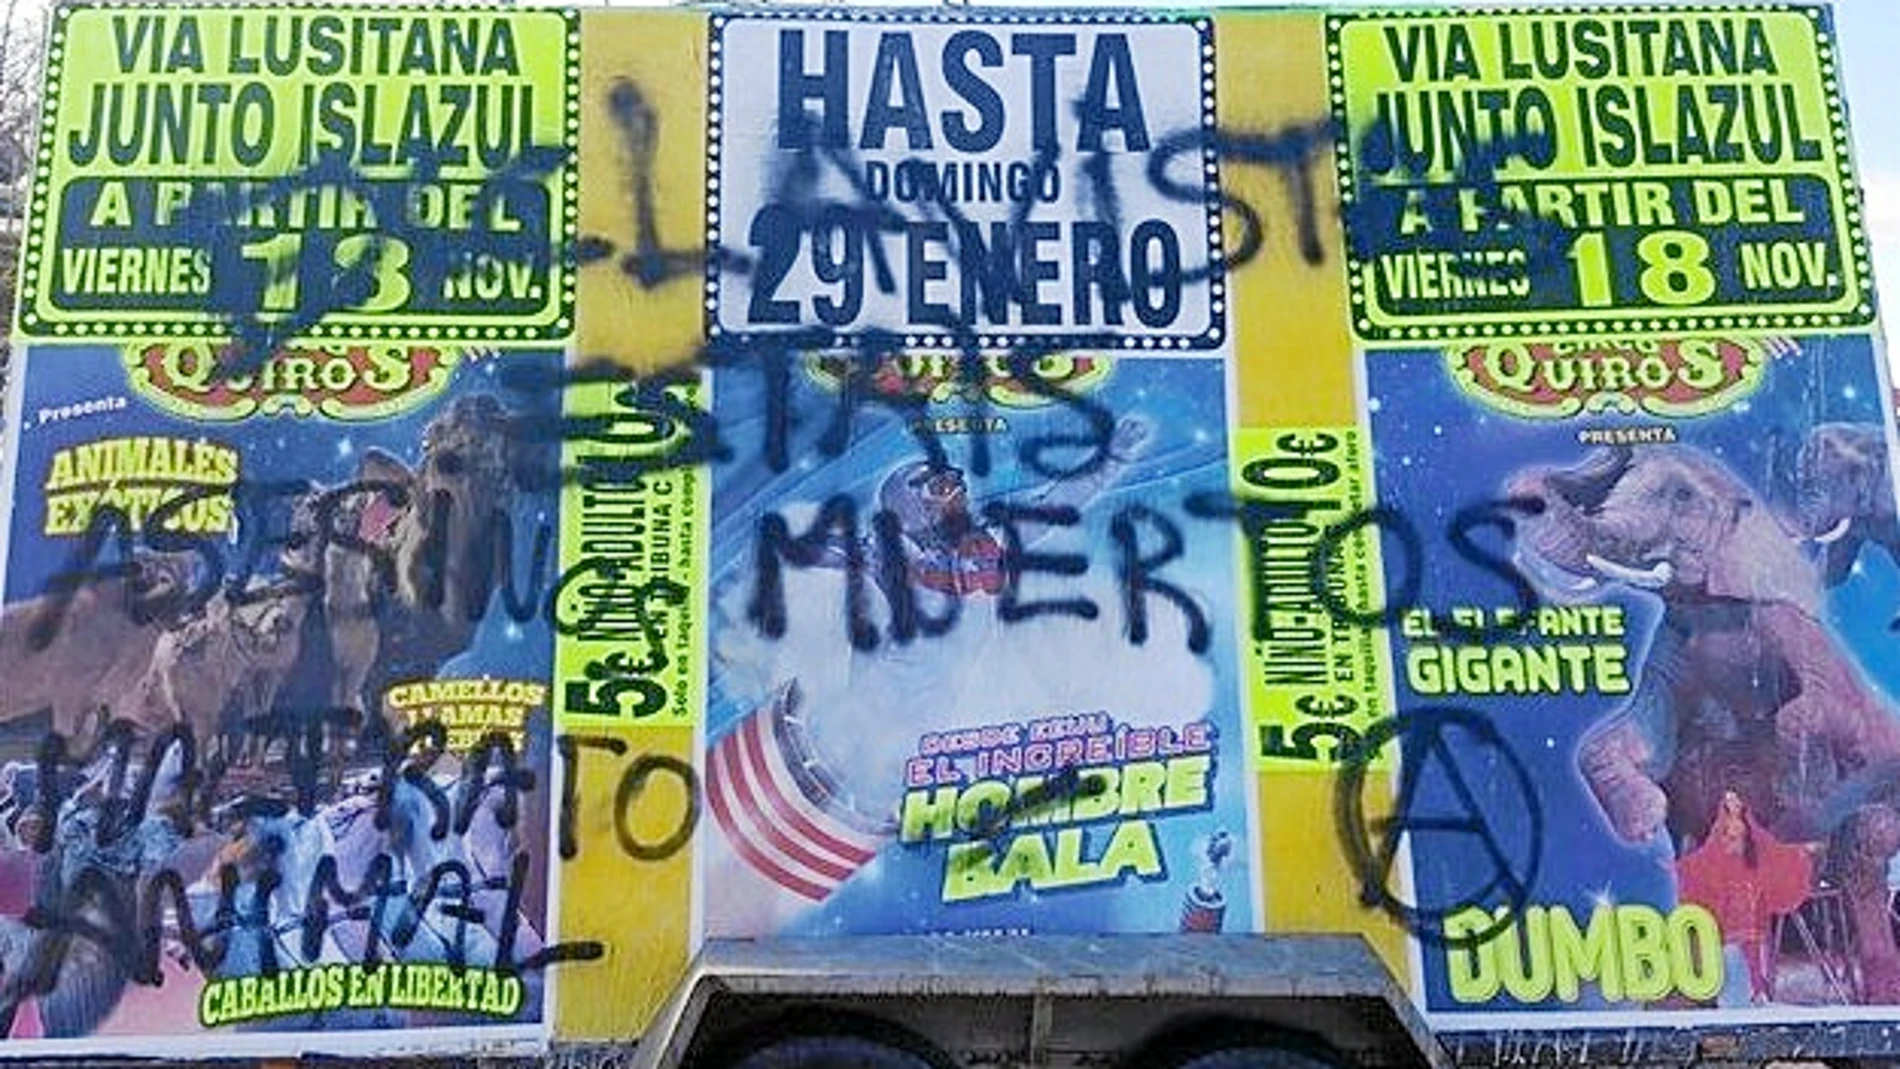 El gerente del Circo Quirós ha denunciado ante la Policía las pintadas en sus camiones  y las amenazas que sufrió el pasado sábado por parte de un grupo de animalistas